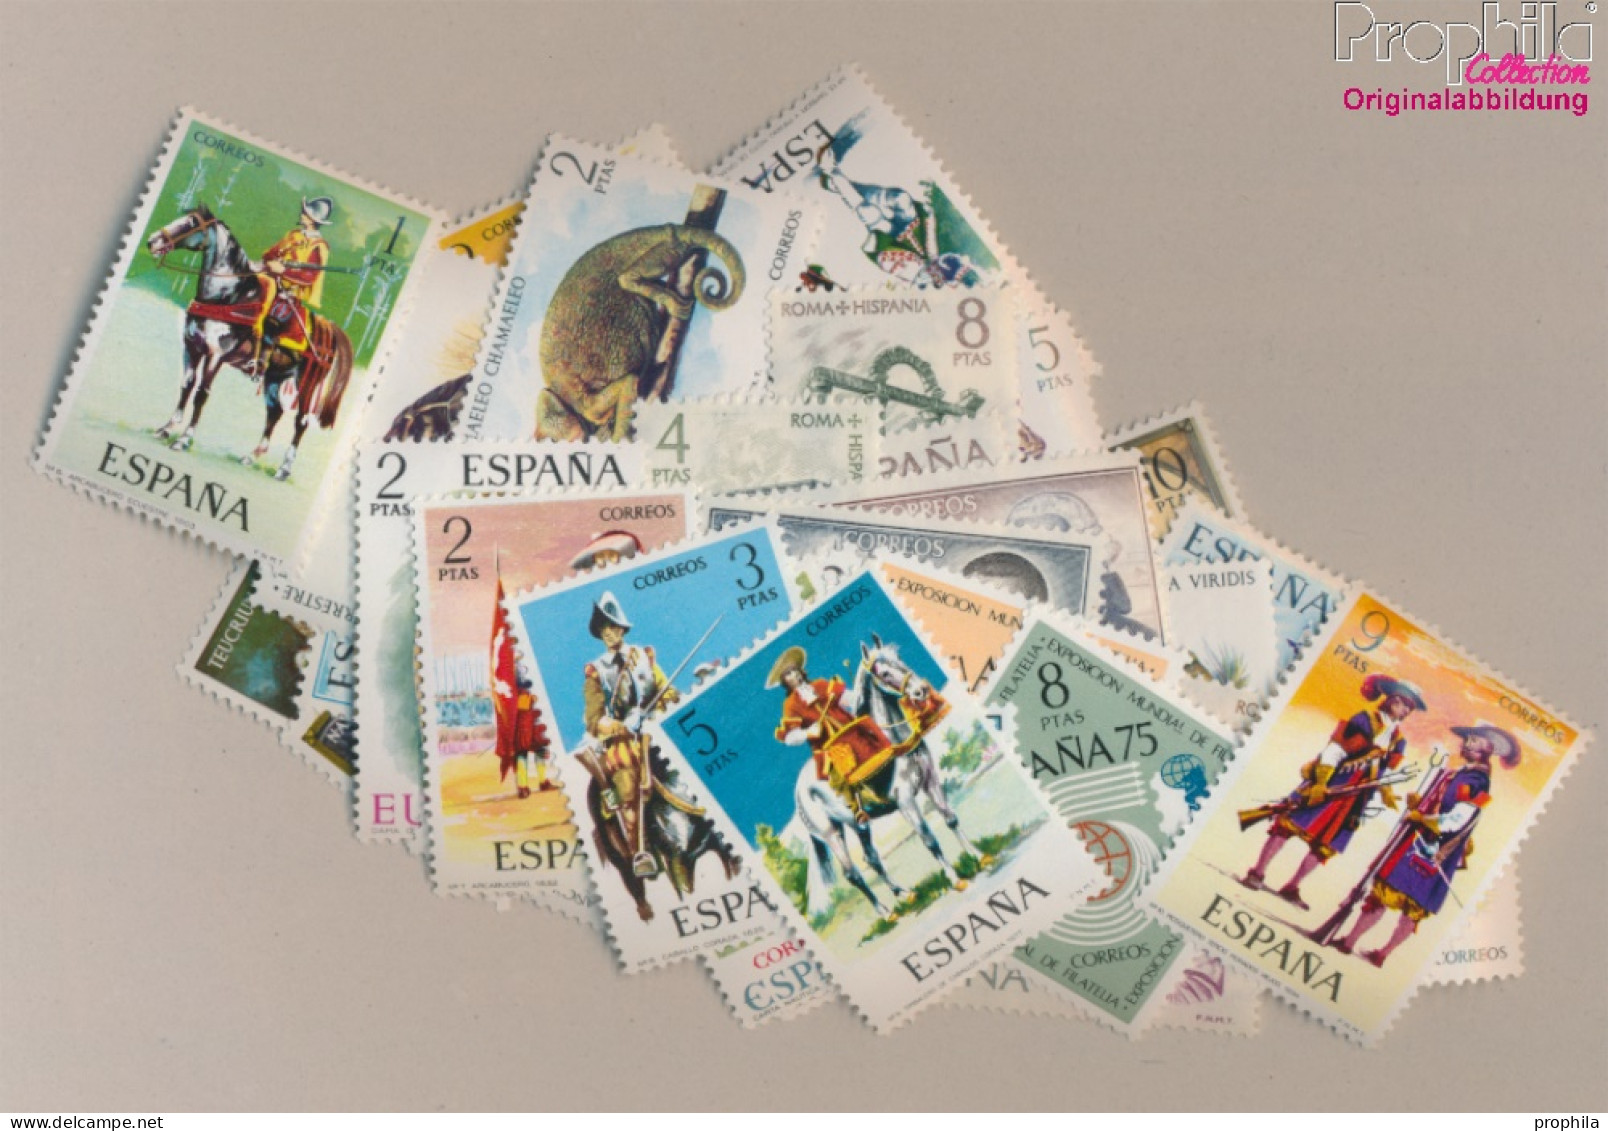 Spanien Postfrisch Uniformen, Tiere, Eisenbahn U.a. 1974 Uniformen, Tiere, Eisenbahn U.a.  (10368169 - Unused Stamps